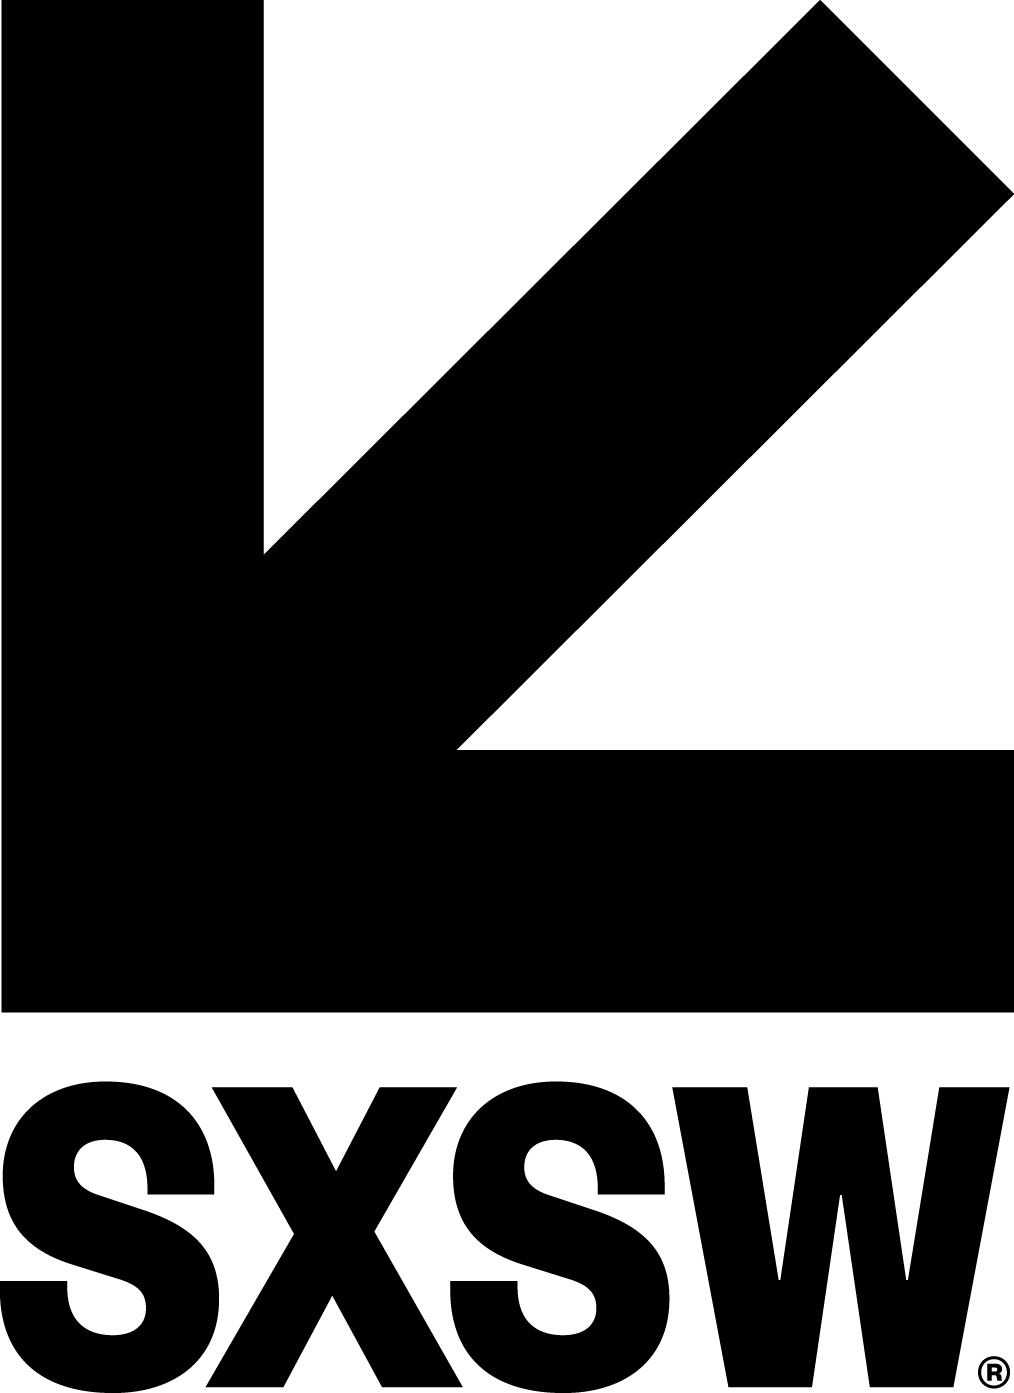 SXSW - South by Southwest Company Logo